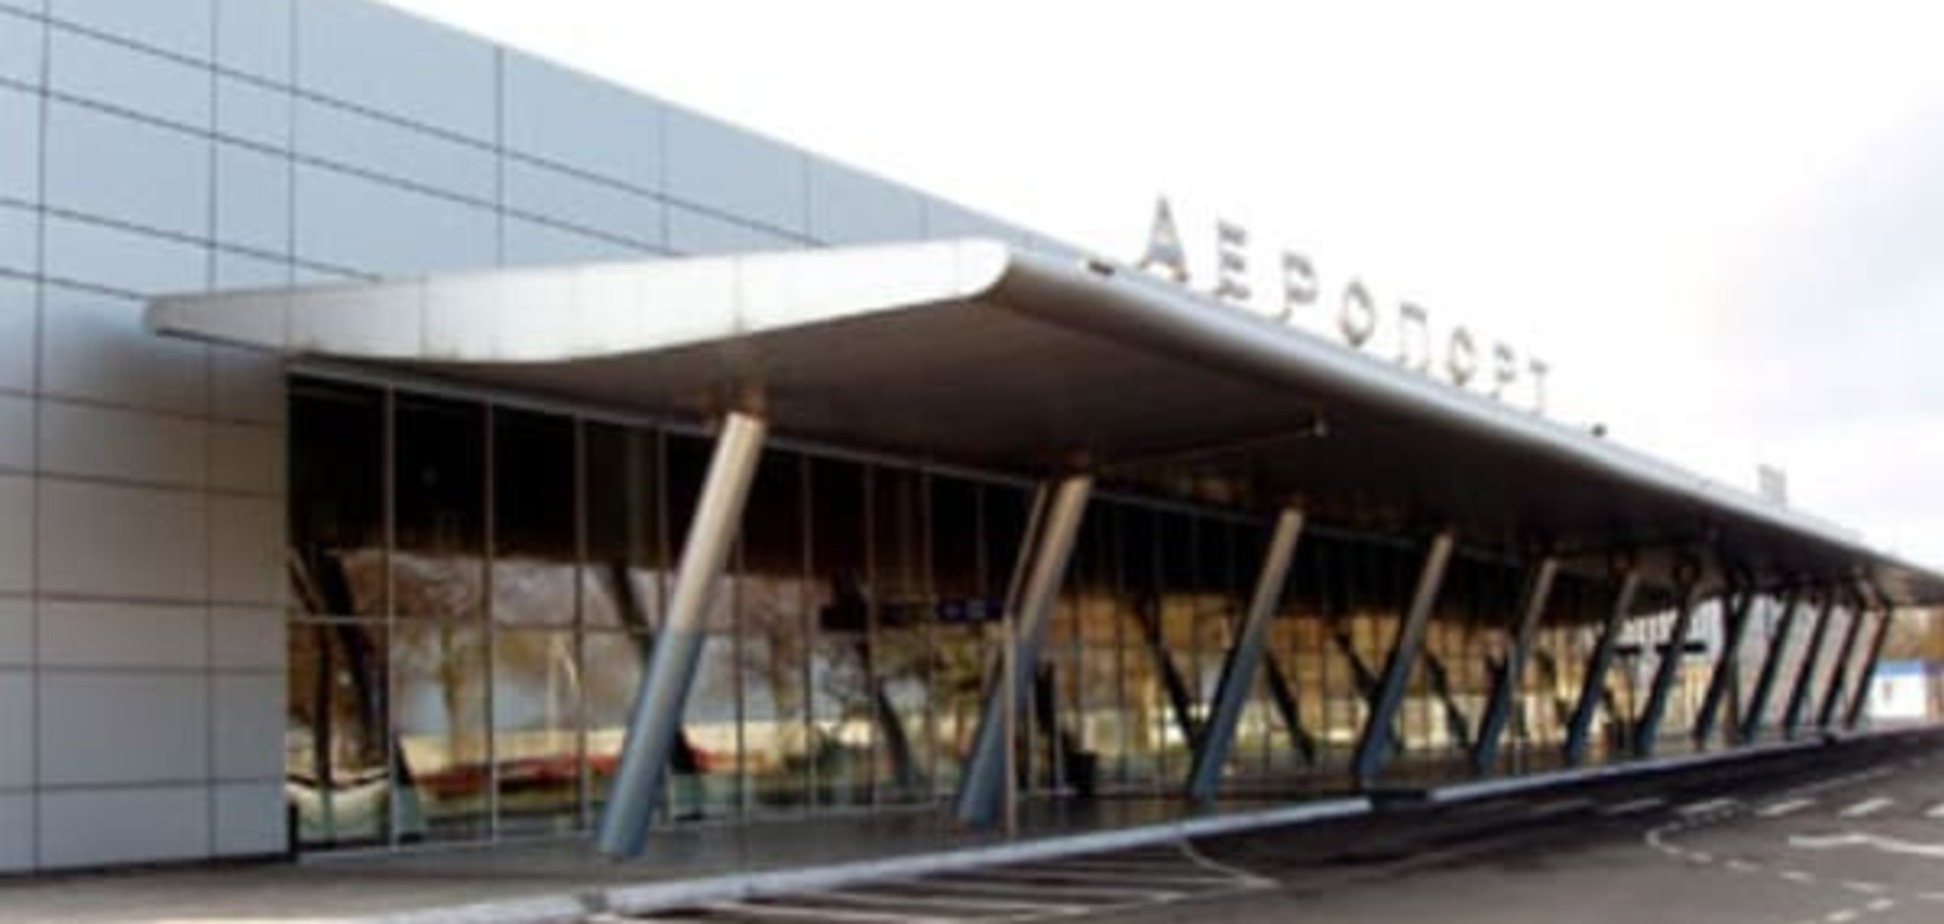 Ціна питання 60 млн: обласний аеропорт Донеччини перенесуть до Маріуполя